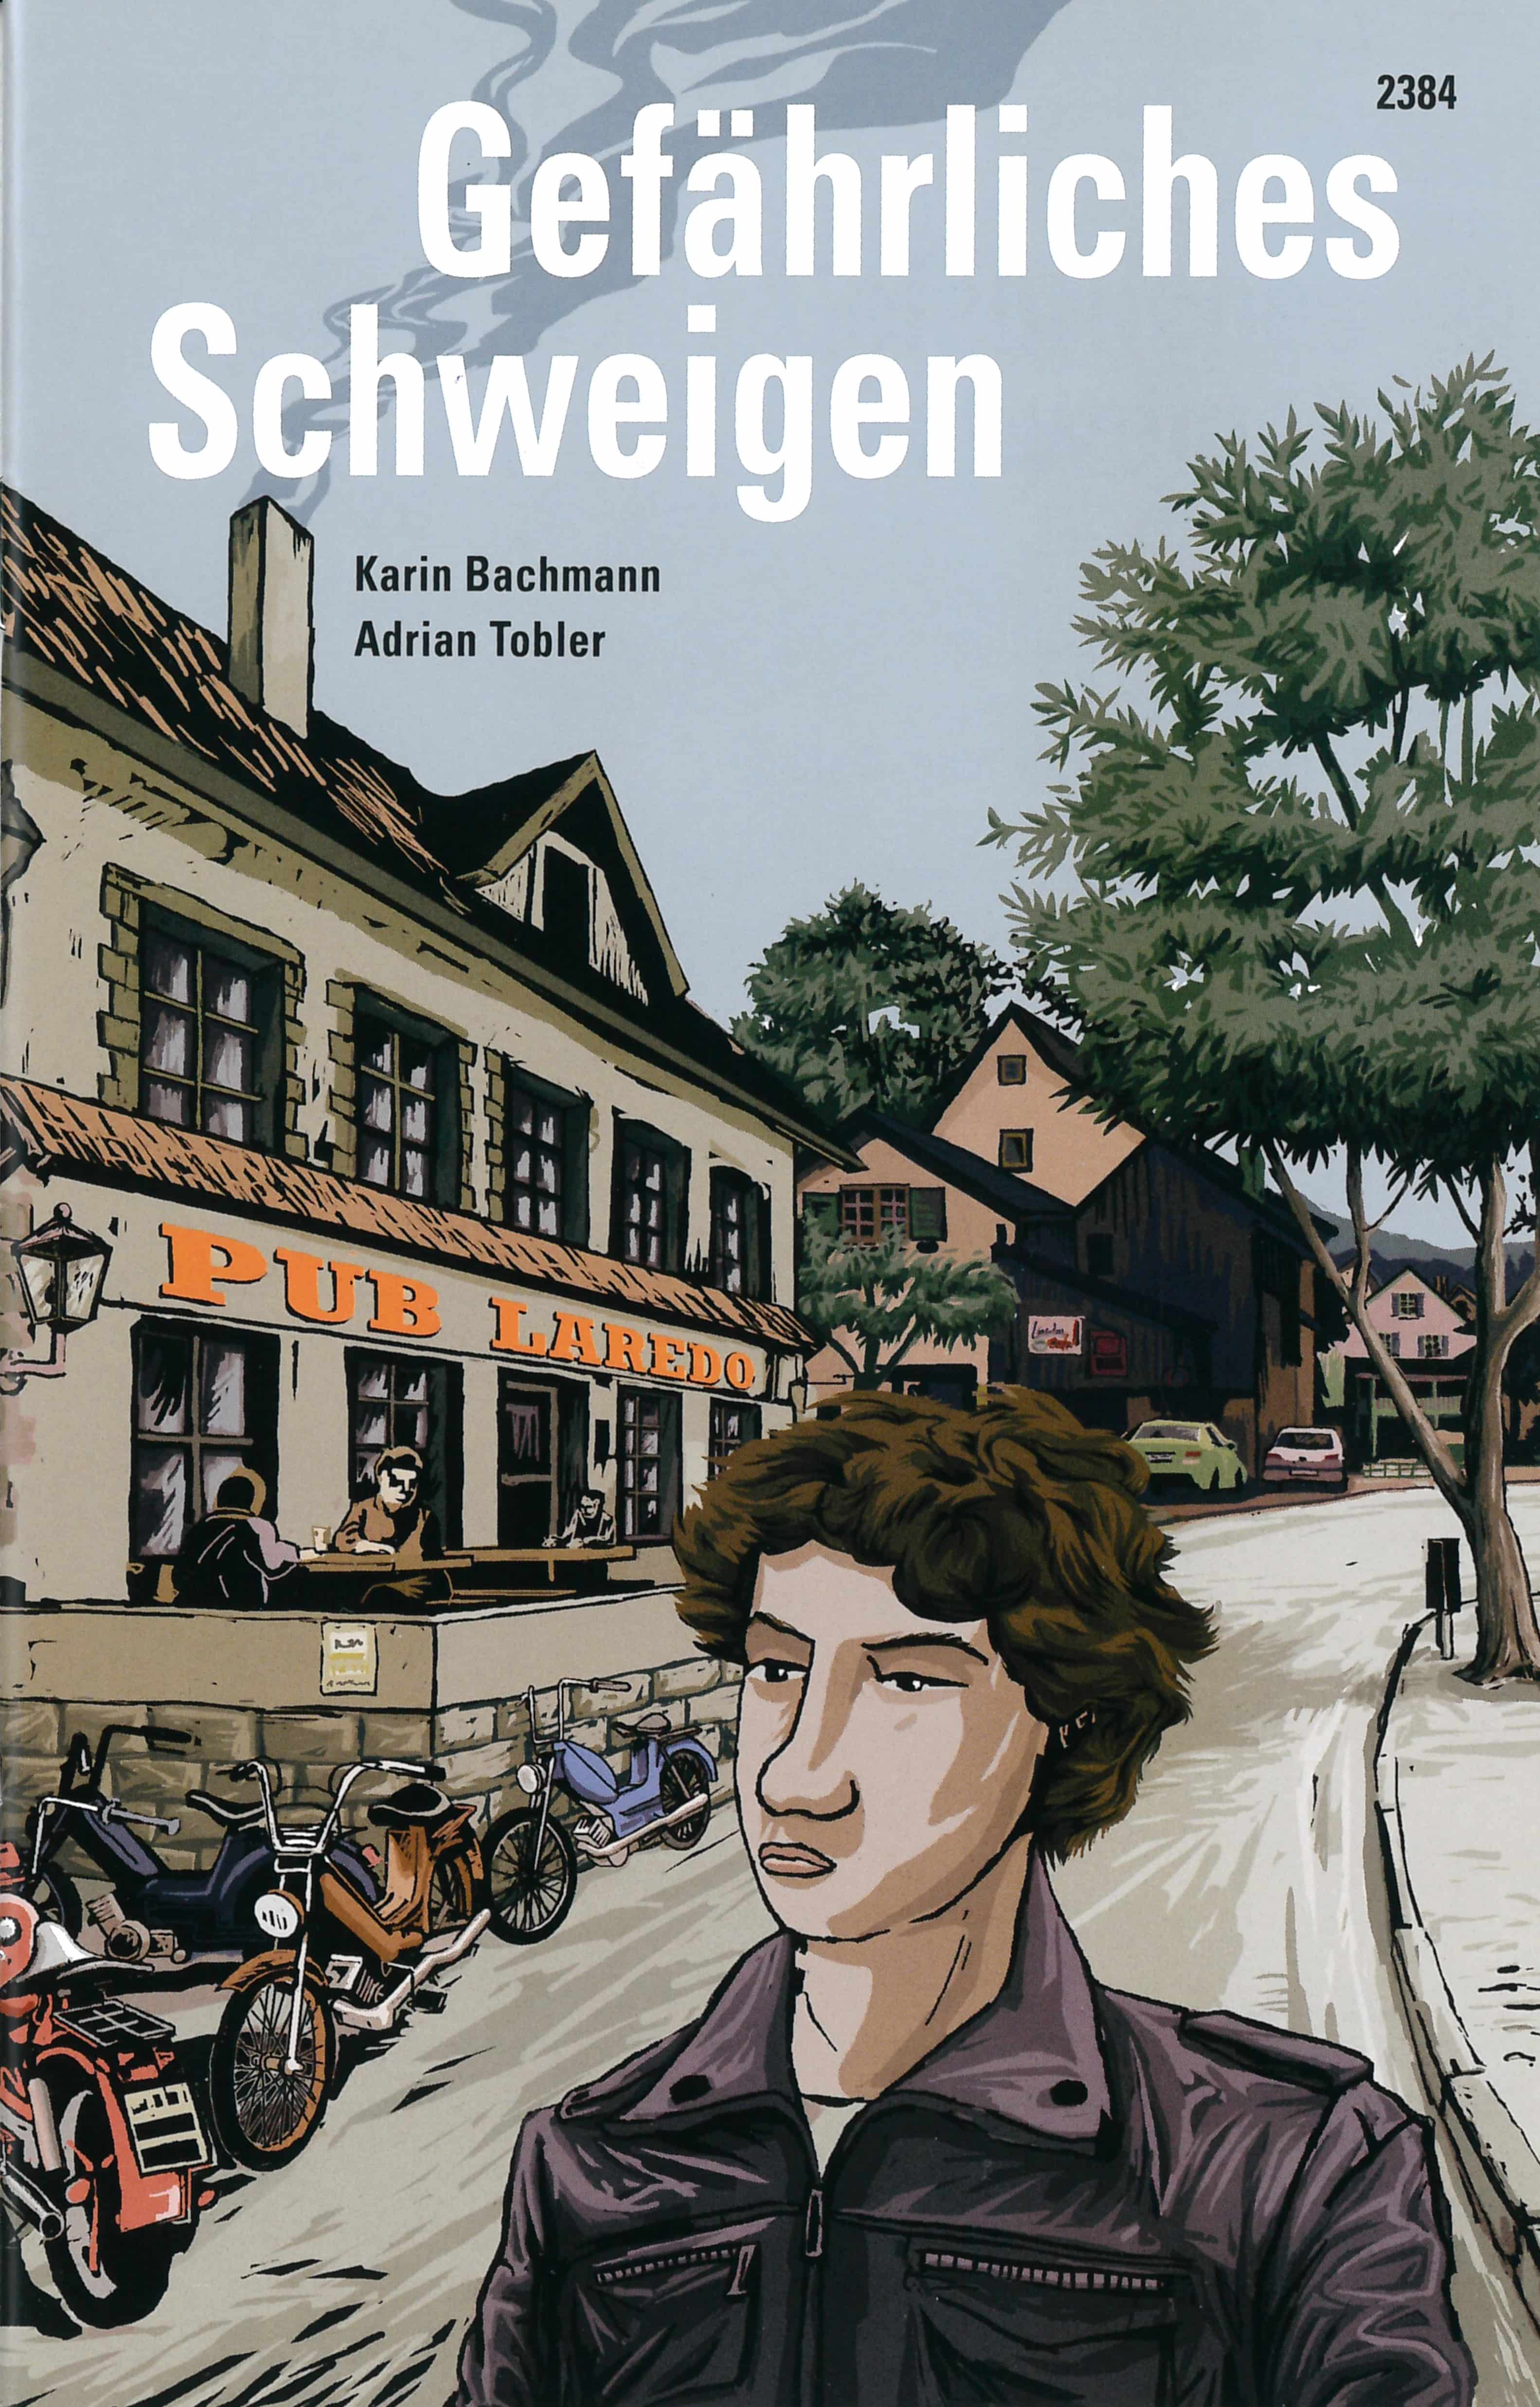 Gefaehrliches Schweigen, ein Jugendbuch von Karin Bachmann, Illustration von Adrian Tobler, SJW Verlag, Krimi